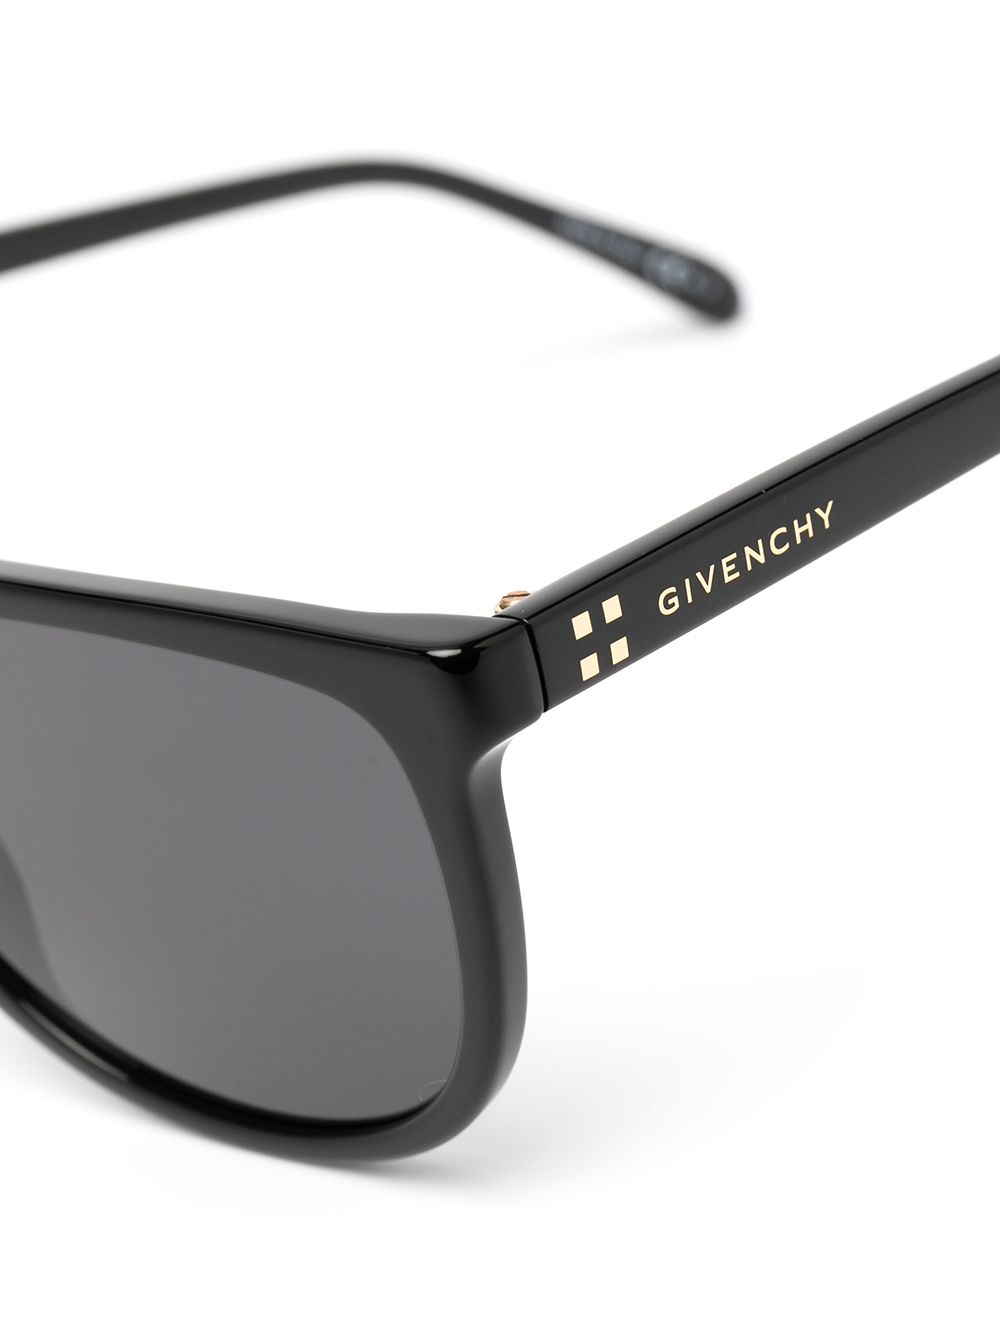 фото Givenchy eyewear солнцезащитные очки с прямым мостом